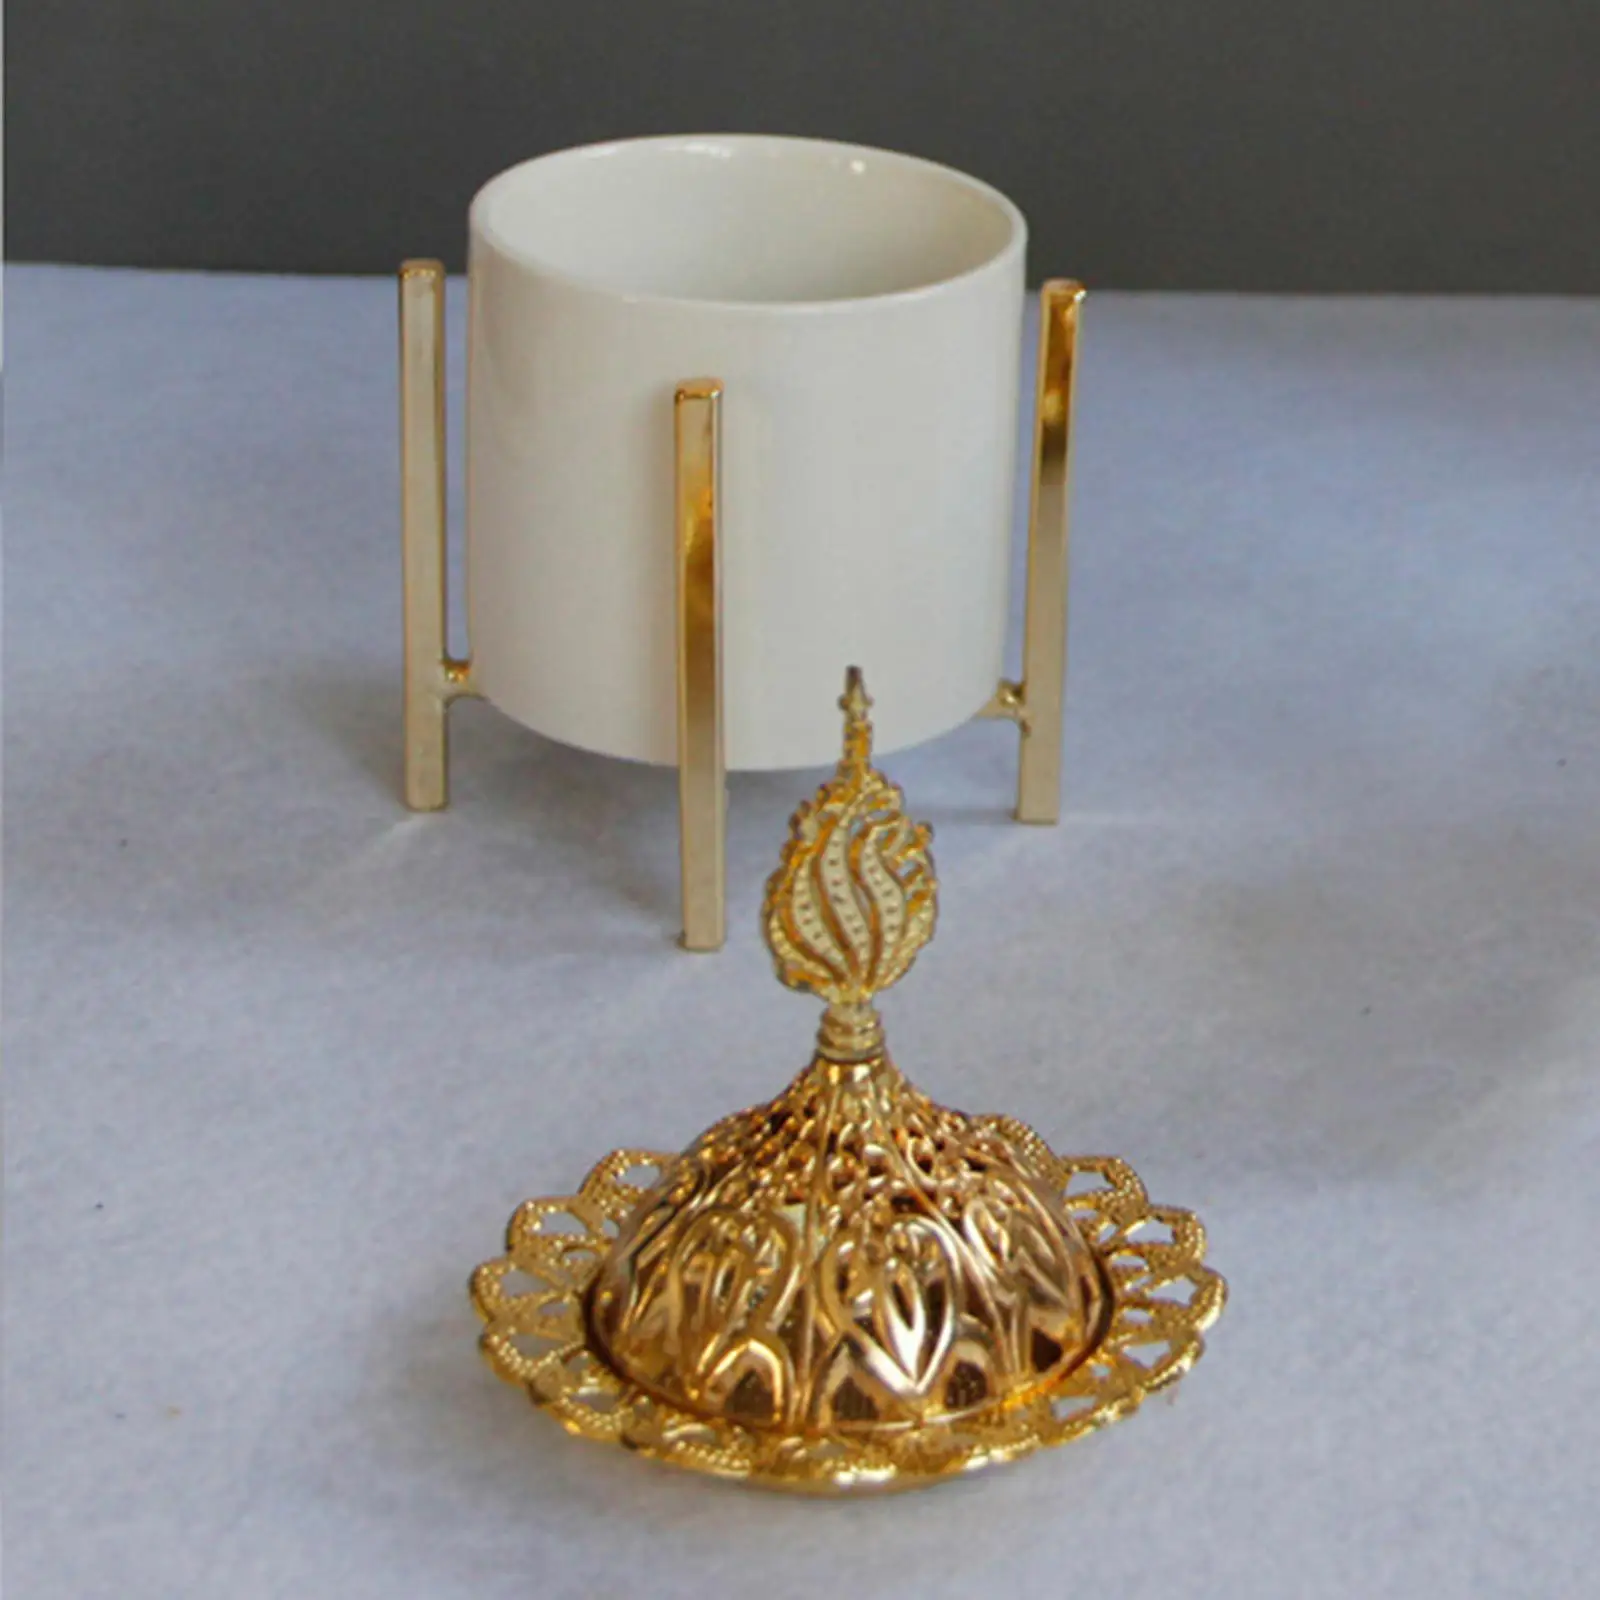 Incense Burner Holder Decorative Fragrance Diffuser Traditional Stand Ceramic Censer for Meditation Housewarming Gift Desktop